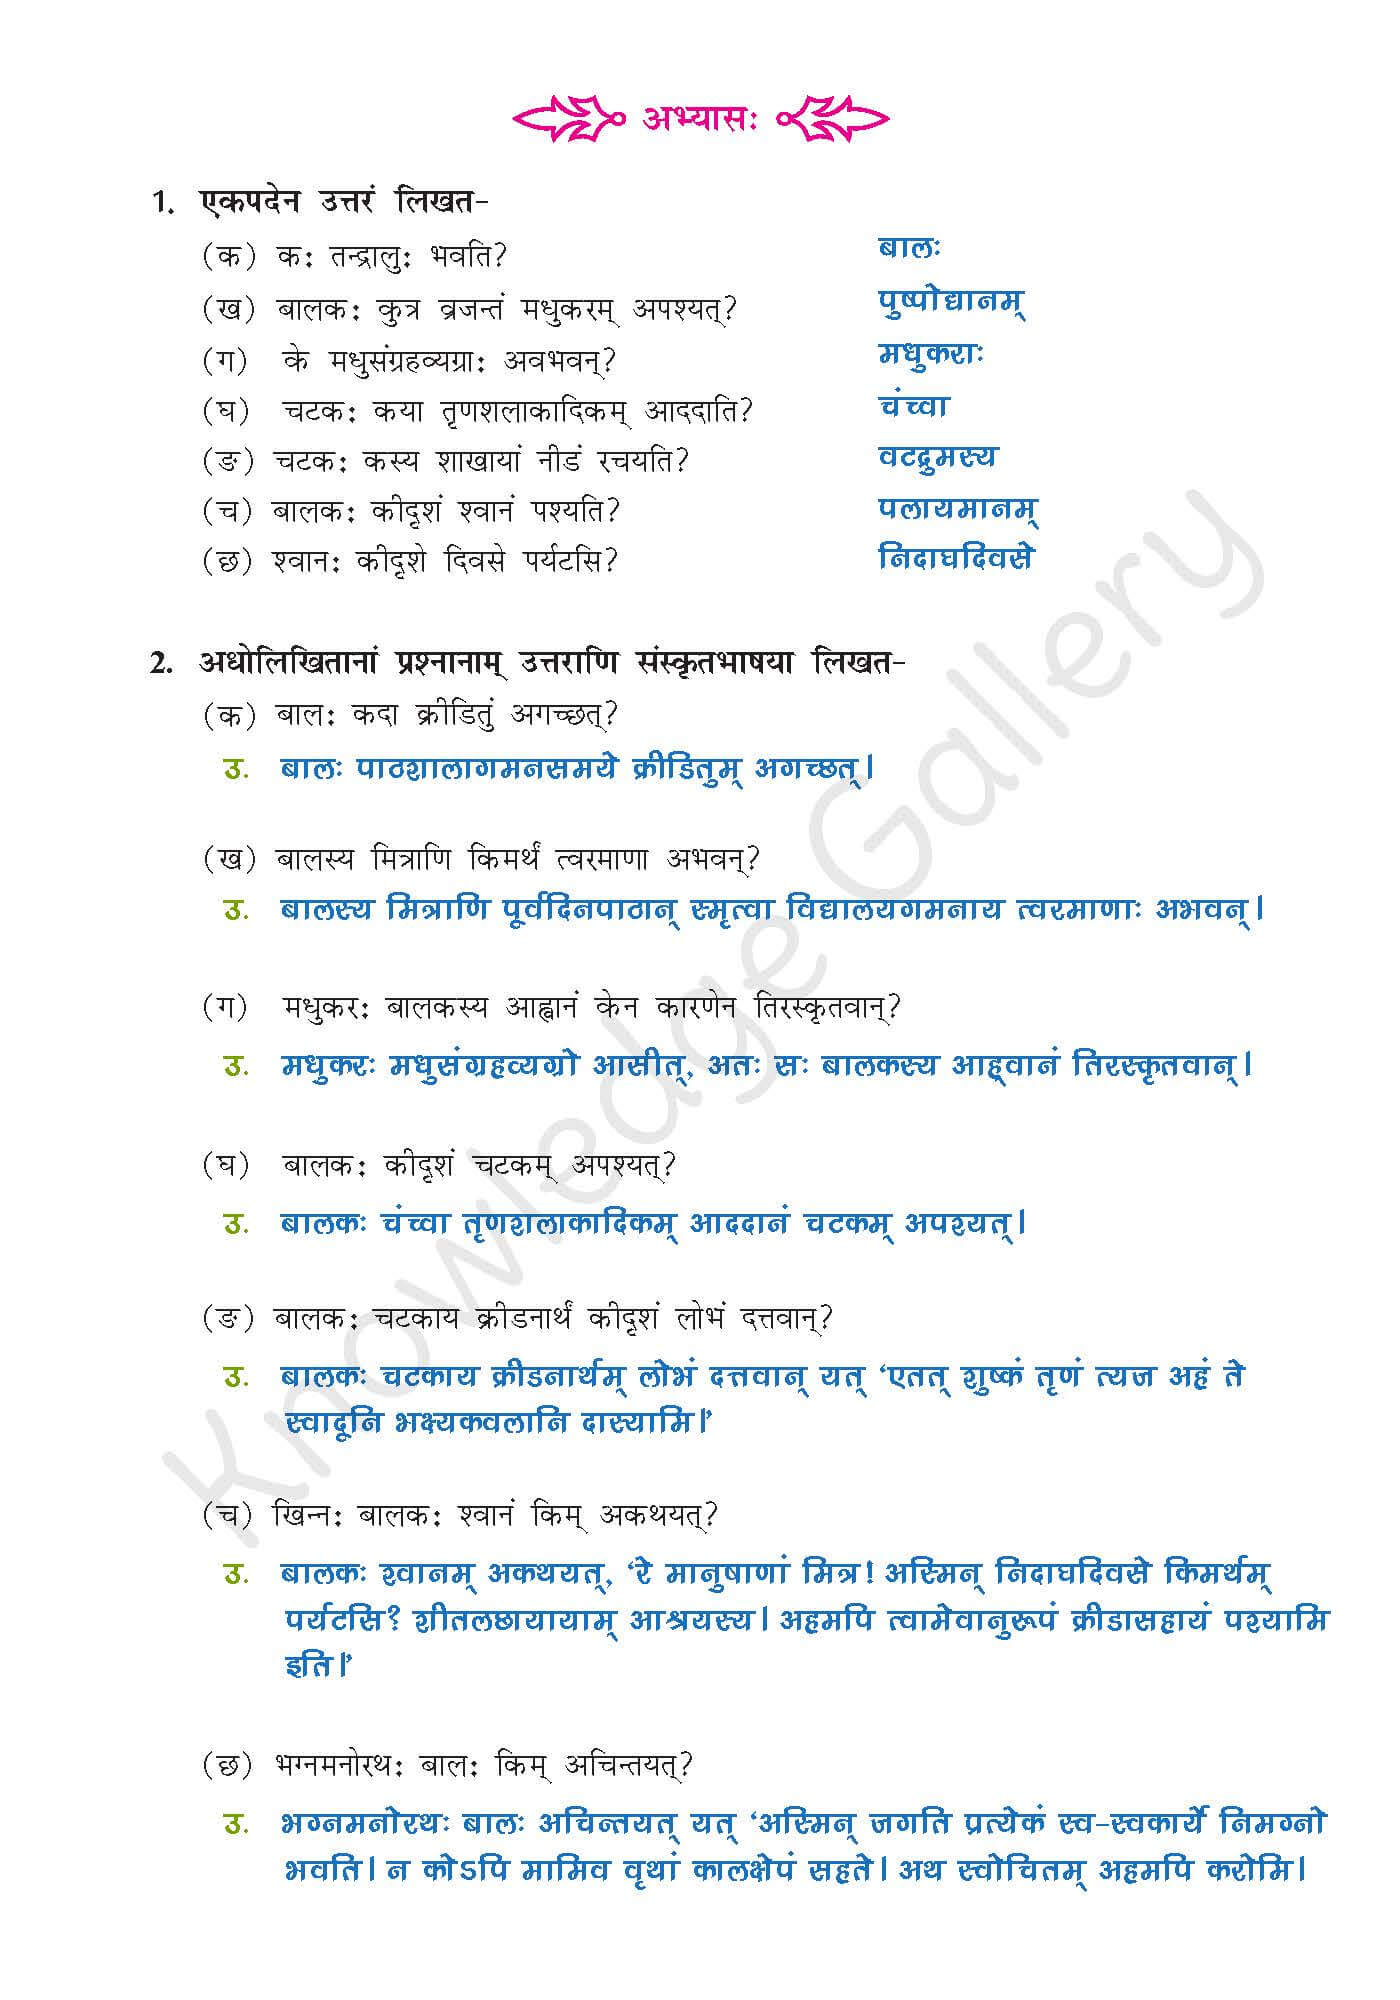 NCERT Solution For Class 9 Sanskrit Chapter 5 part 5